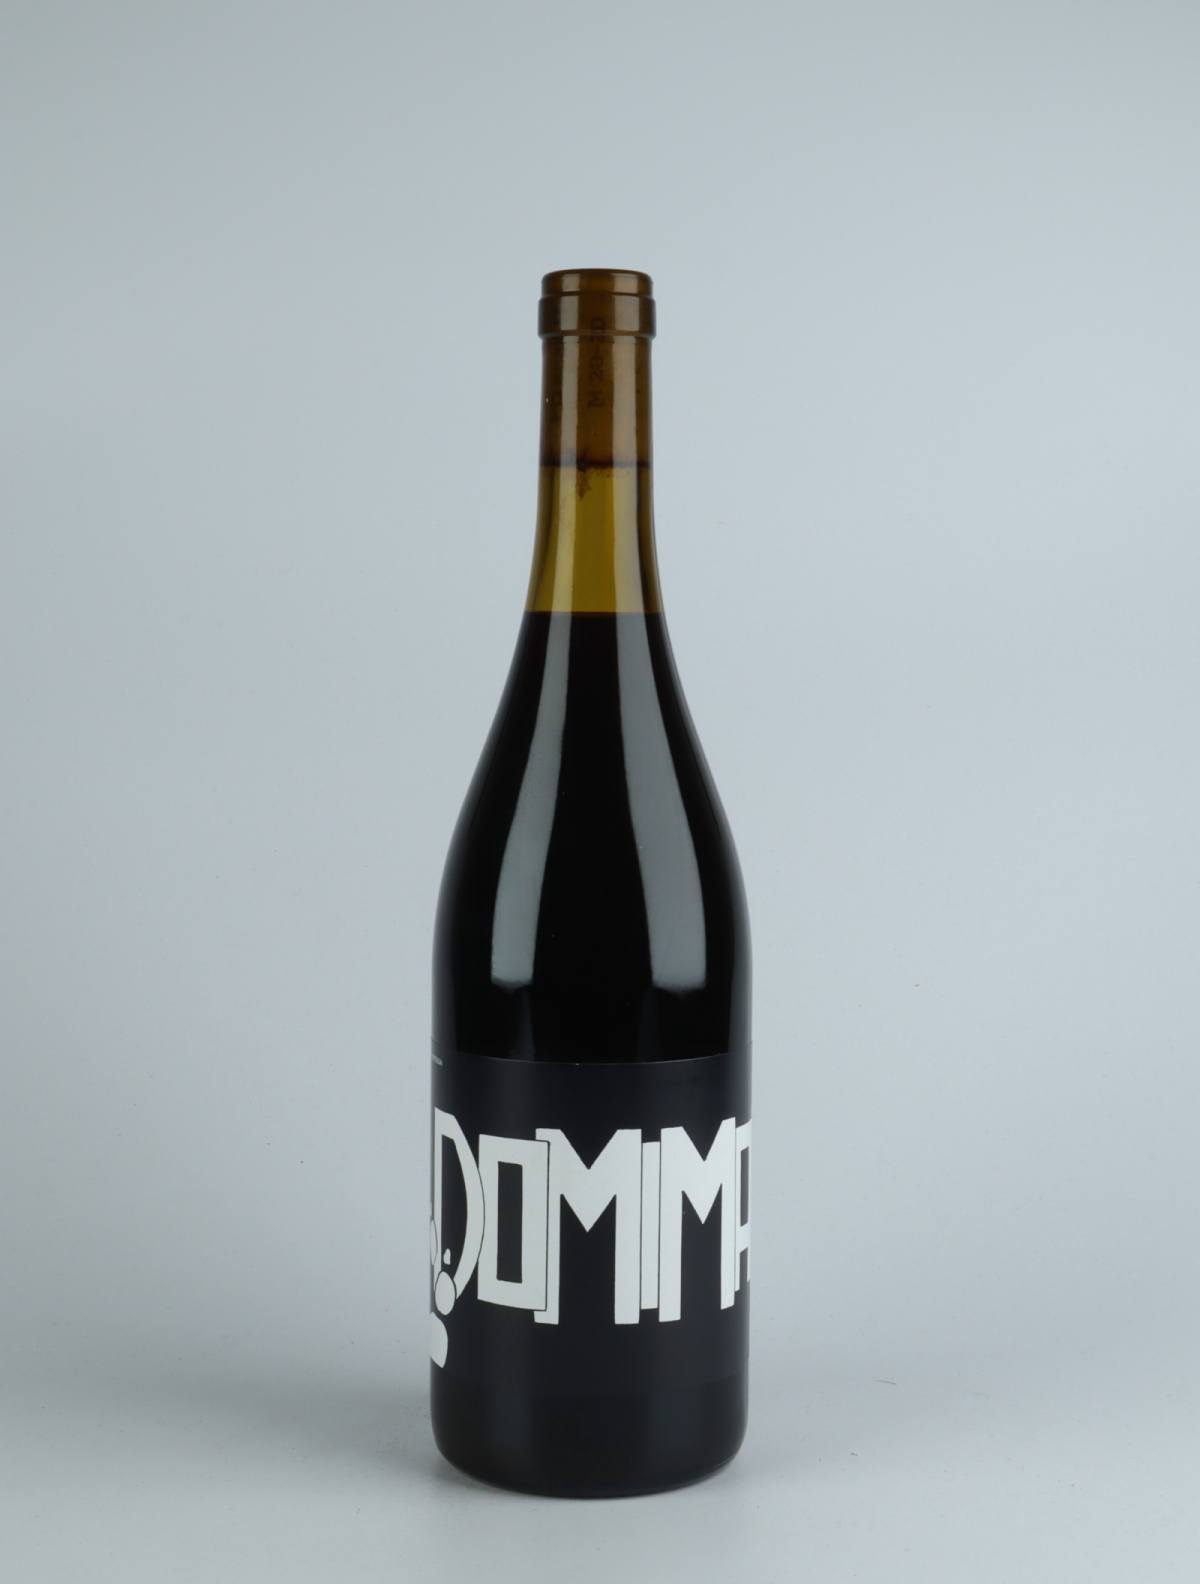 A bottle 2019 Domi Mai Red wine from Az. Agr. Farnea di Marco Buratti, Veneto in Italy